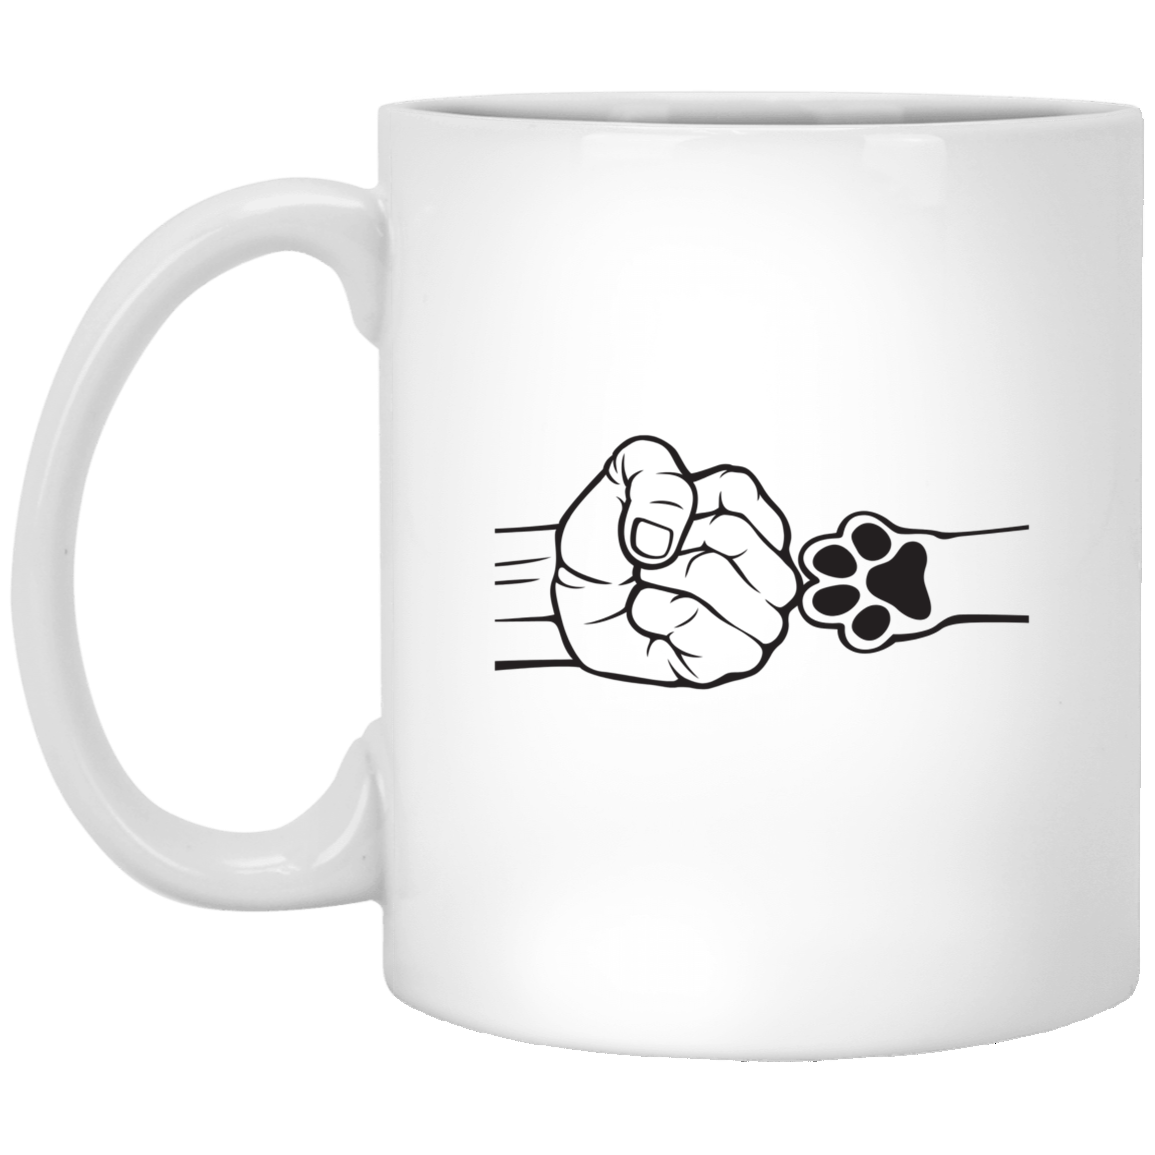 Fist Bump With Pet Mug